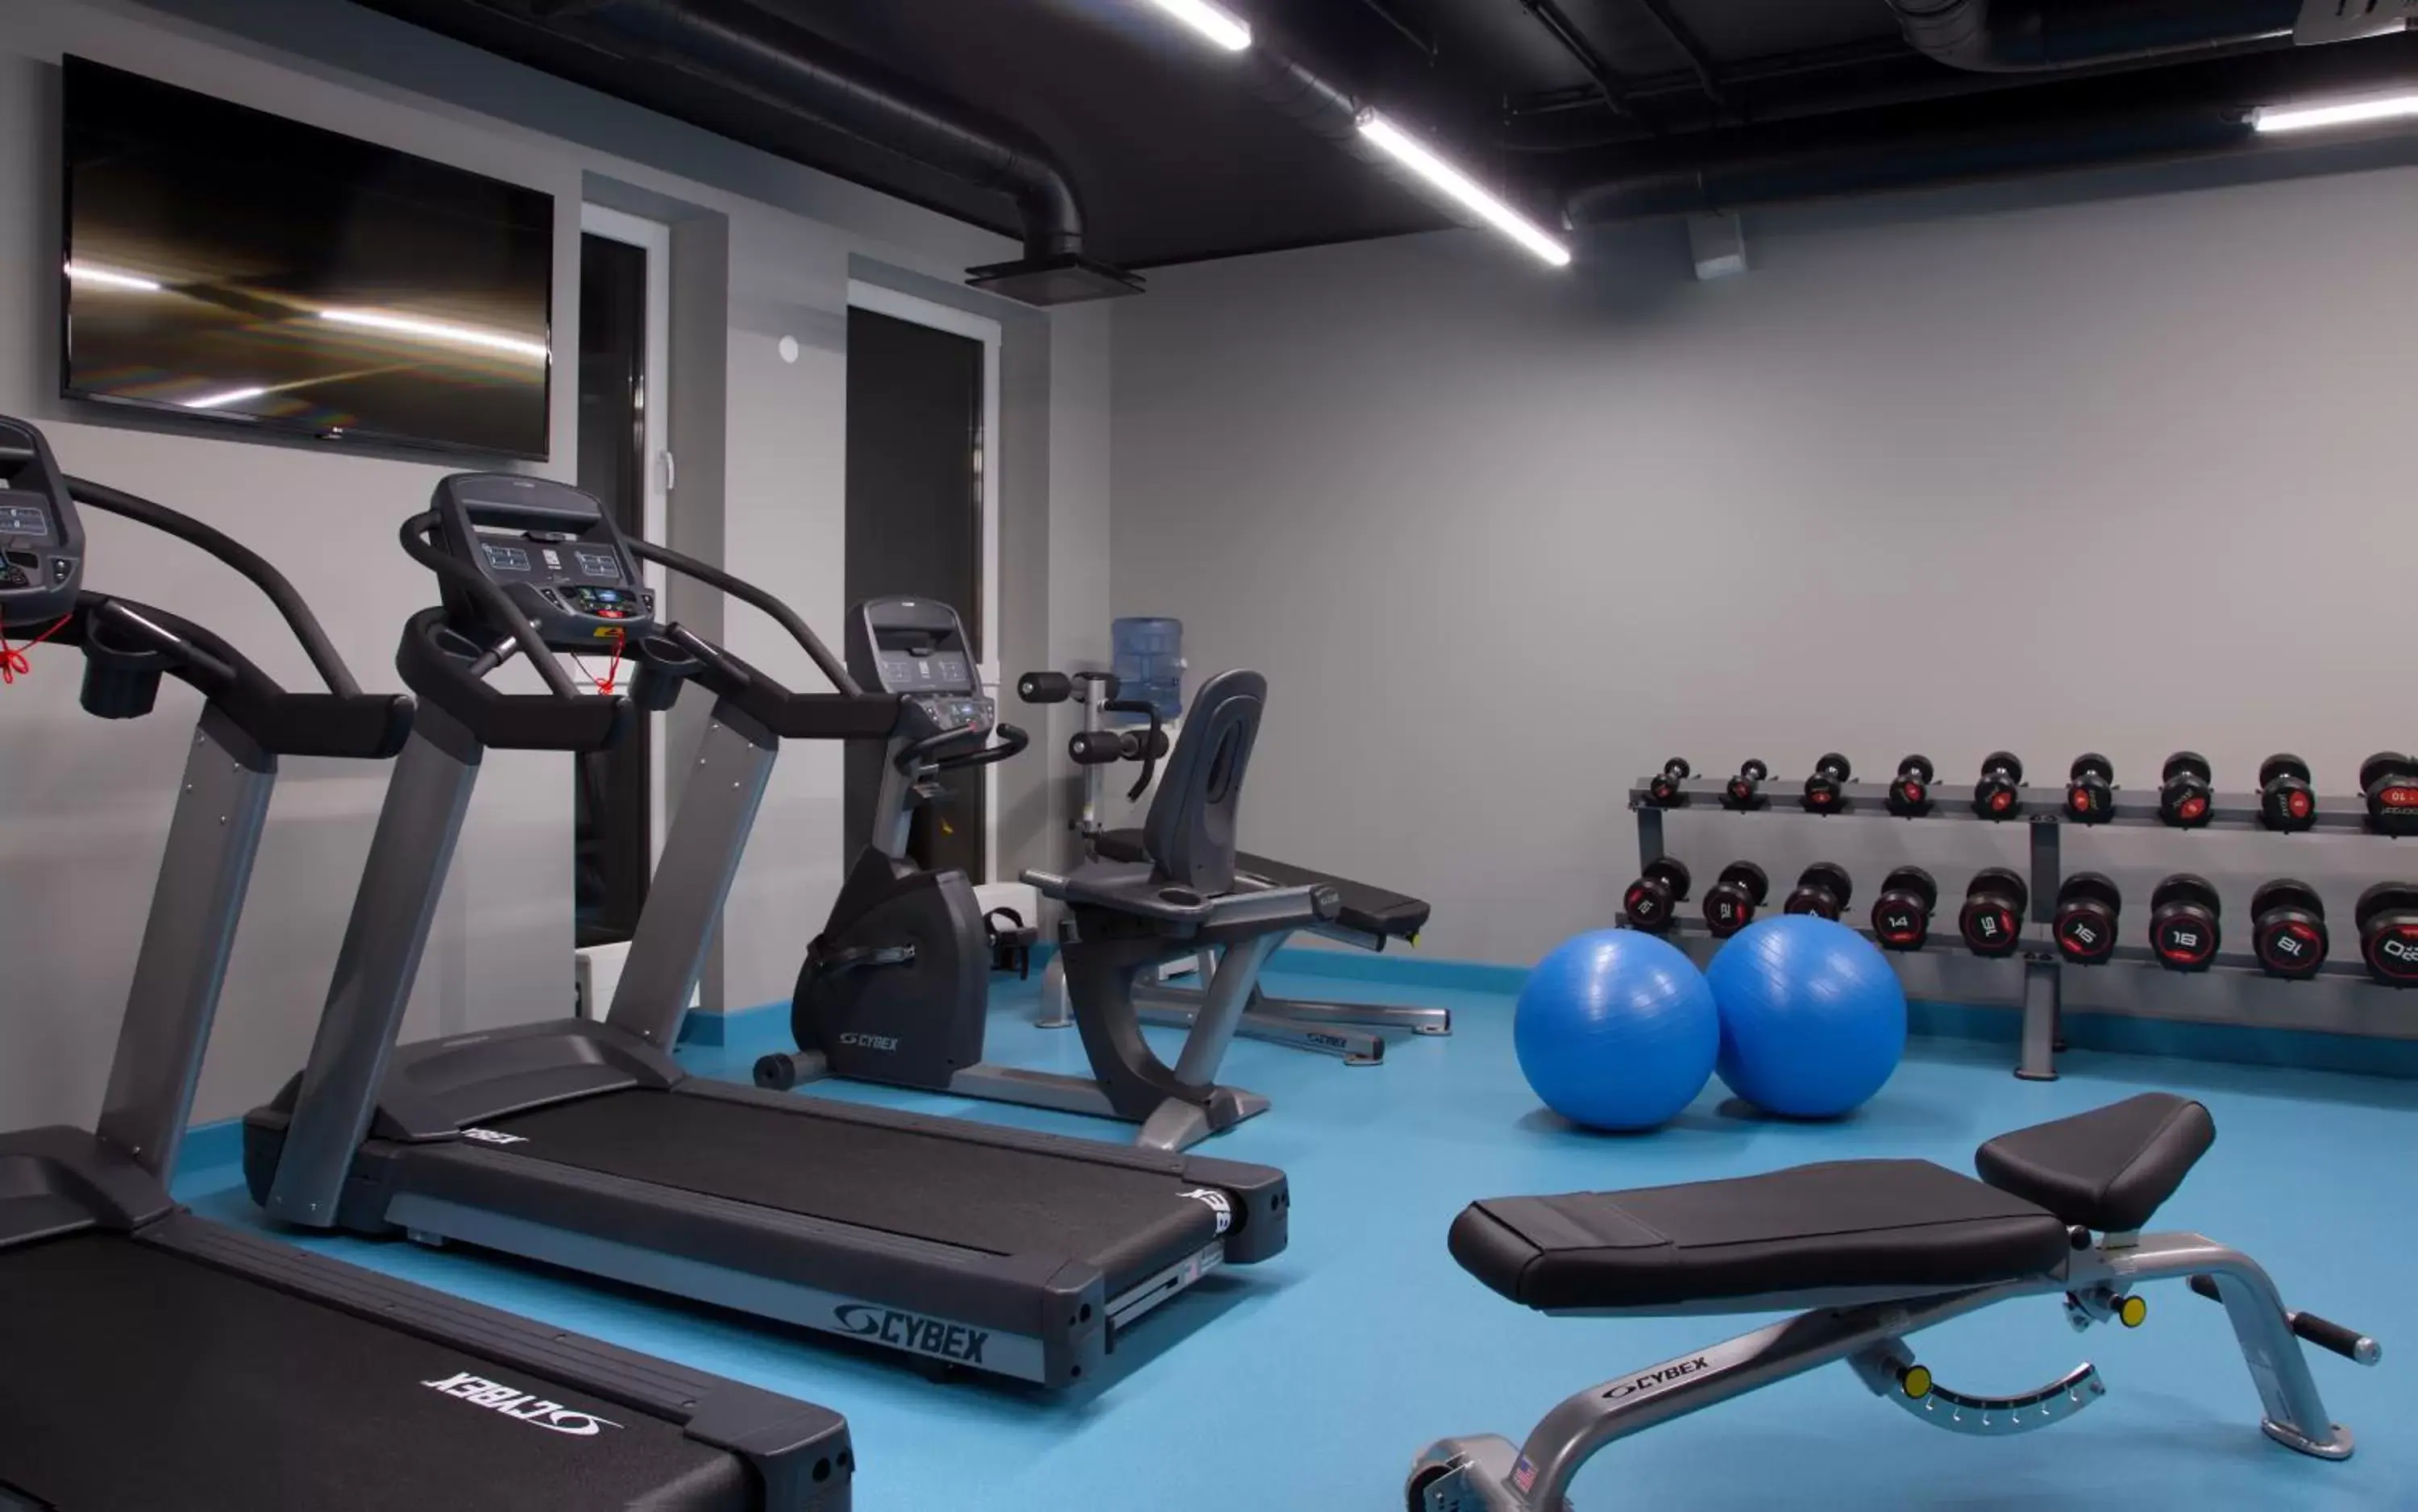 Fitness centre/facilities, Fitness Center/Facilities in Park Inn by Radisson Riga Valdemara